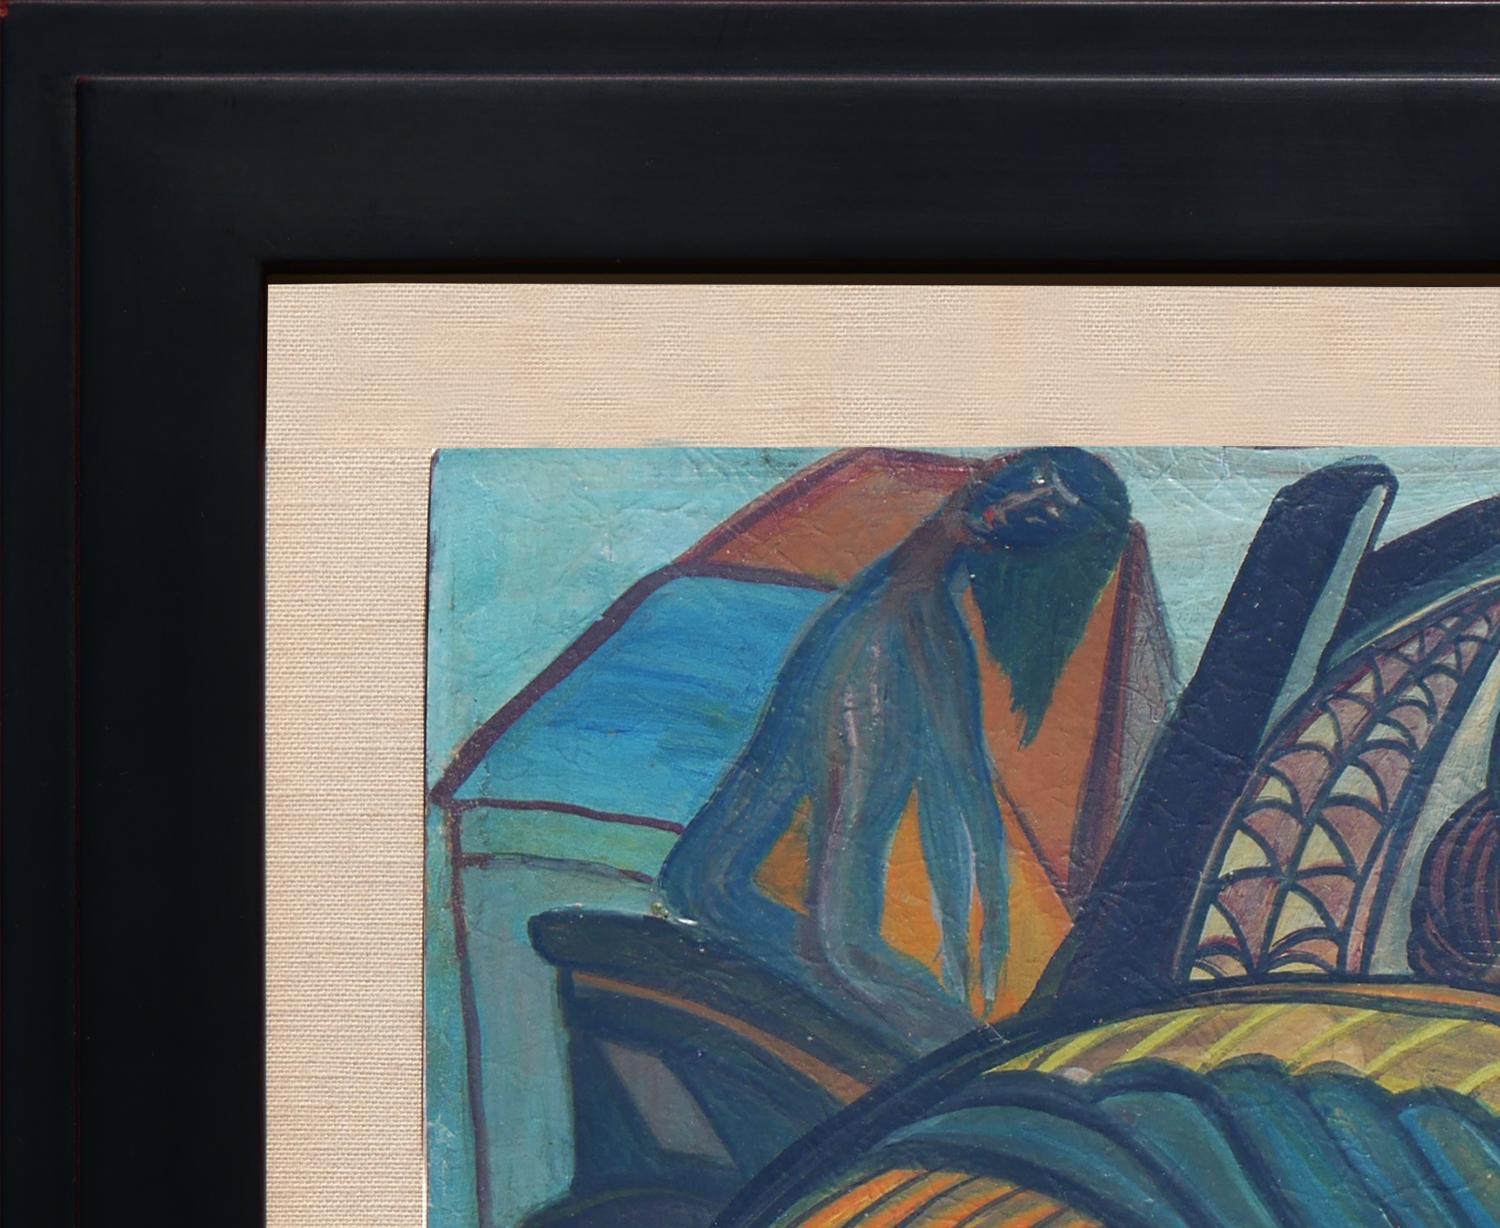 Modernes geometrisches figuratives Gemälde mit von Pablo Picasso inspirierten Gesichtern inmitten stark abstrahierter Erntebilder. Das Werk, das an einen kubistischen Abstraktionsstil erinnert, ist wahrscheinlich südamerikanischen Ursprungs. Vorne